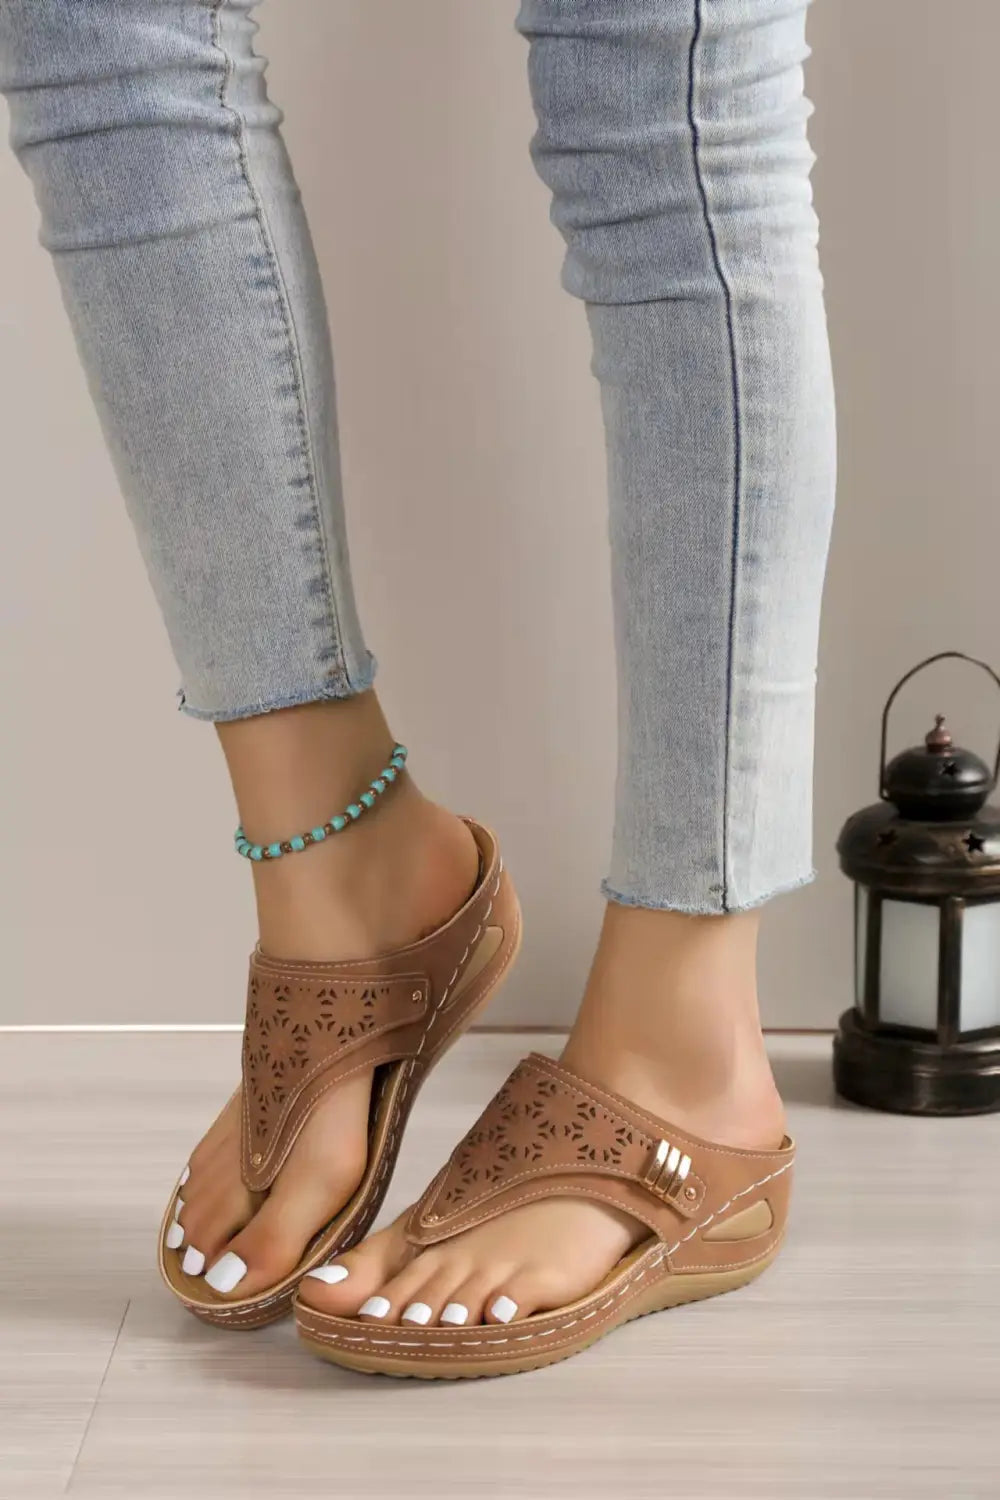 Ladies Between Toe Platform Wedge Sandals Roman Style